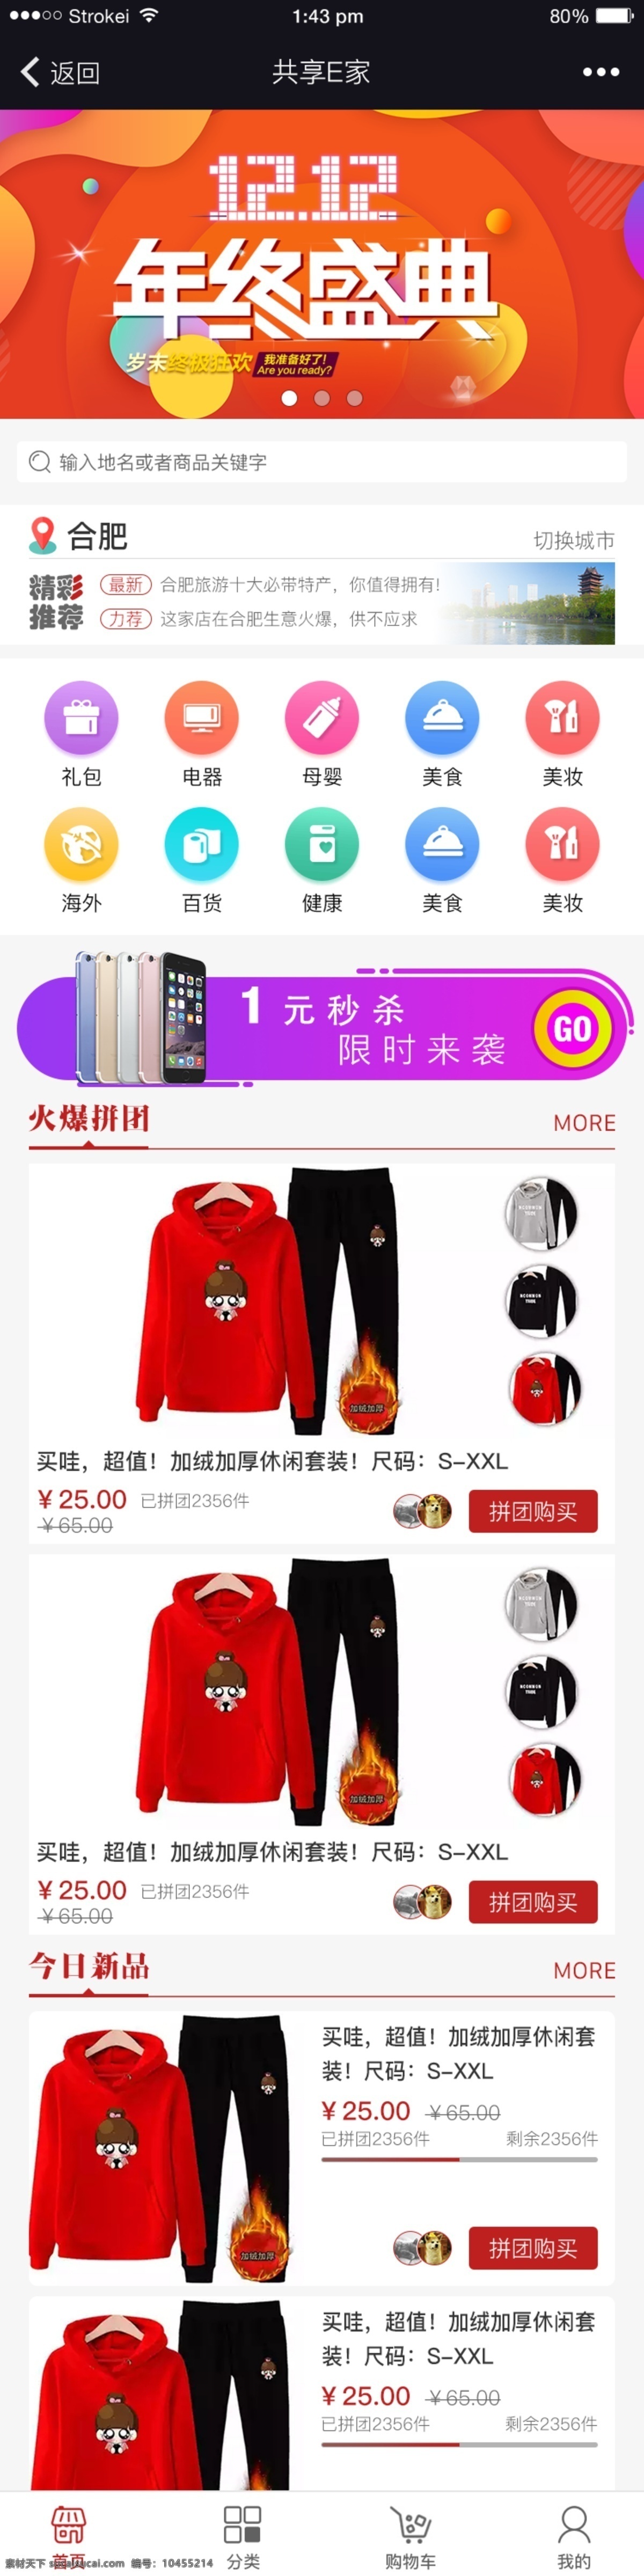 微 信 拼 团 商城 app 网页设计 红色 活跃 拼团 团购 微信 喜庆